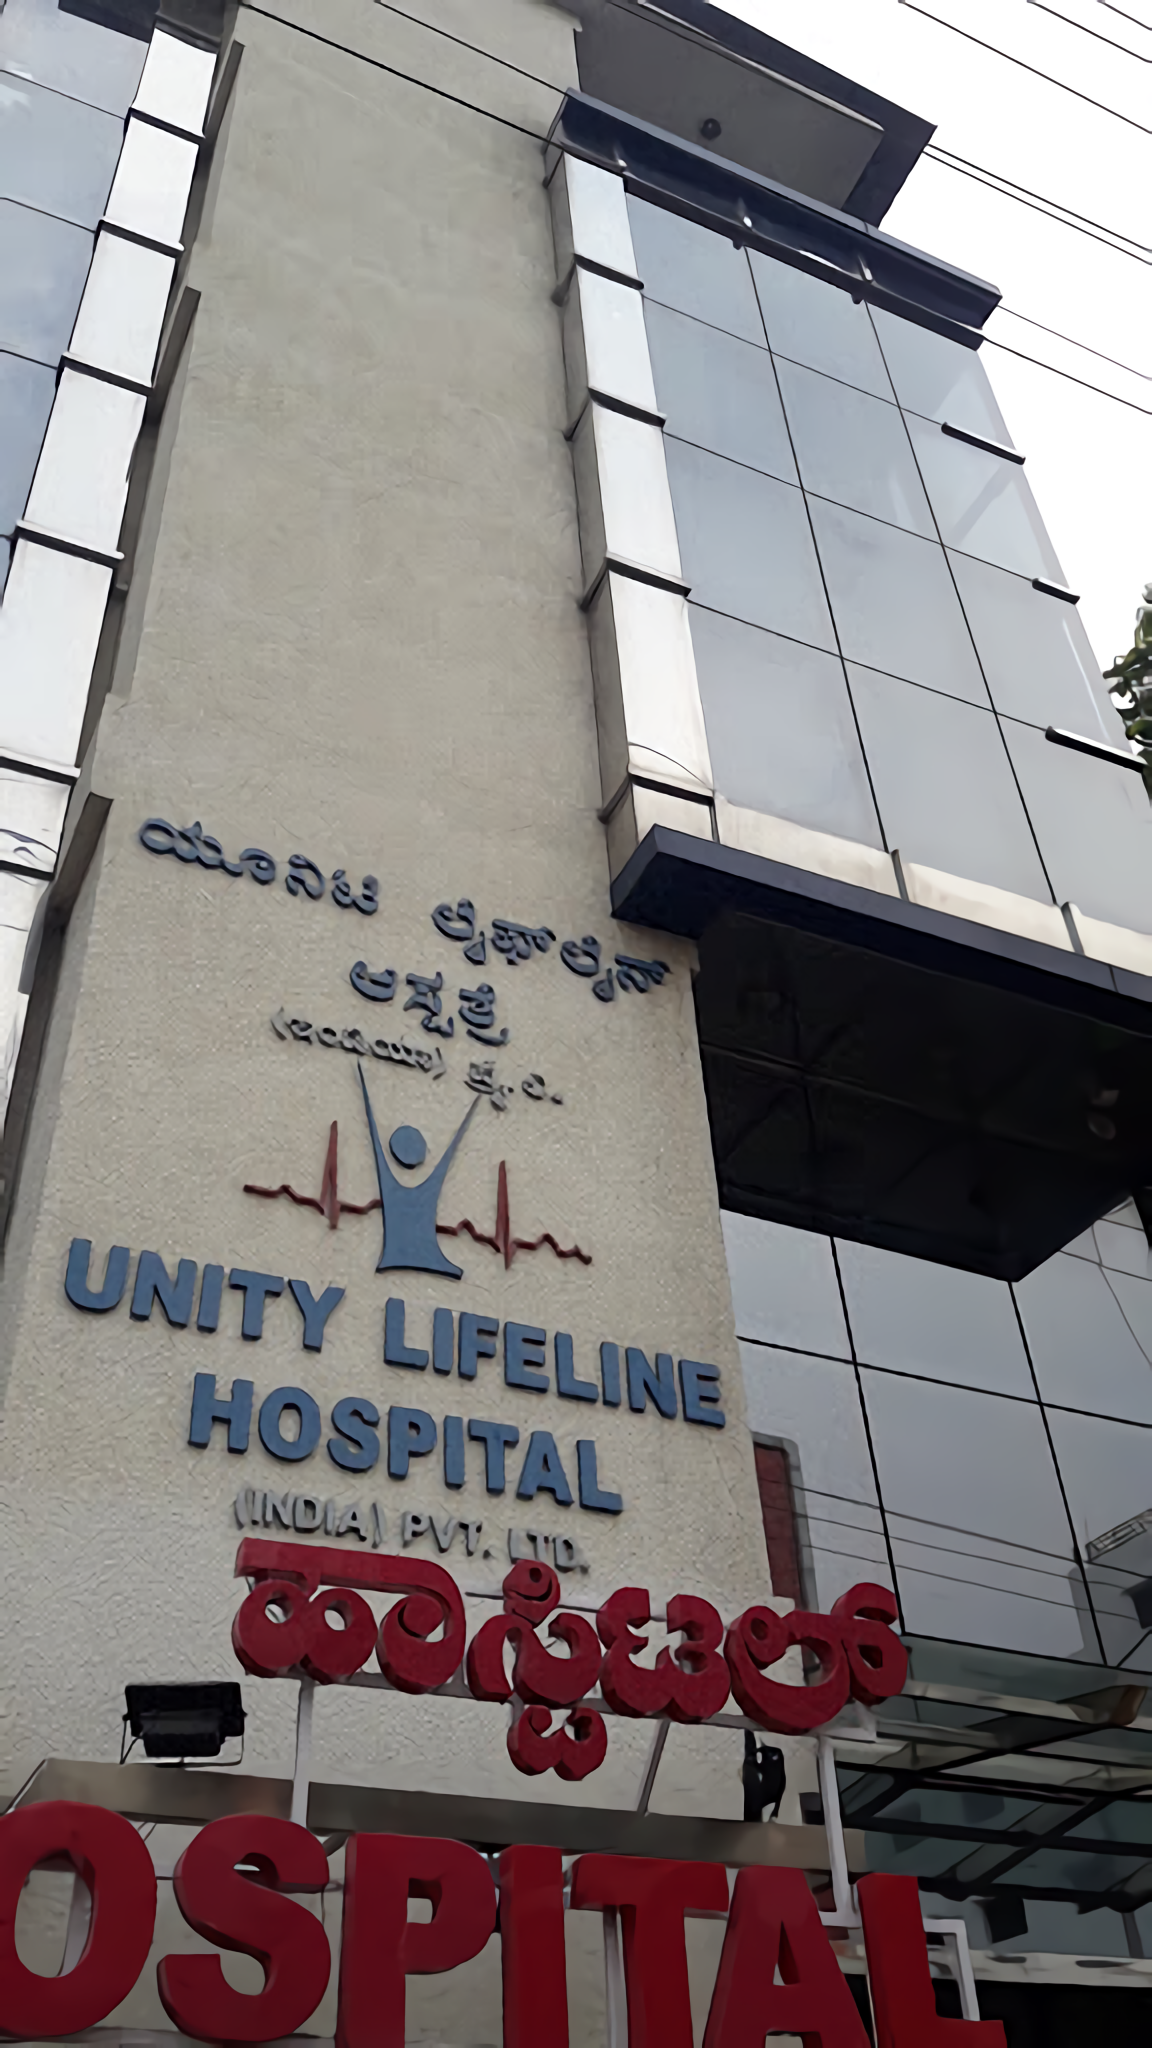 Unity Lifeline Hospital photo